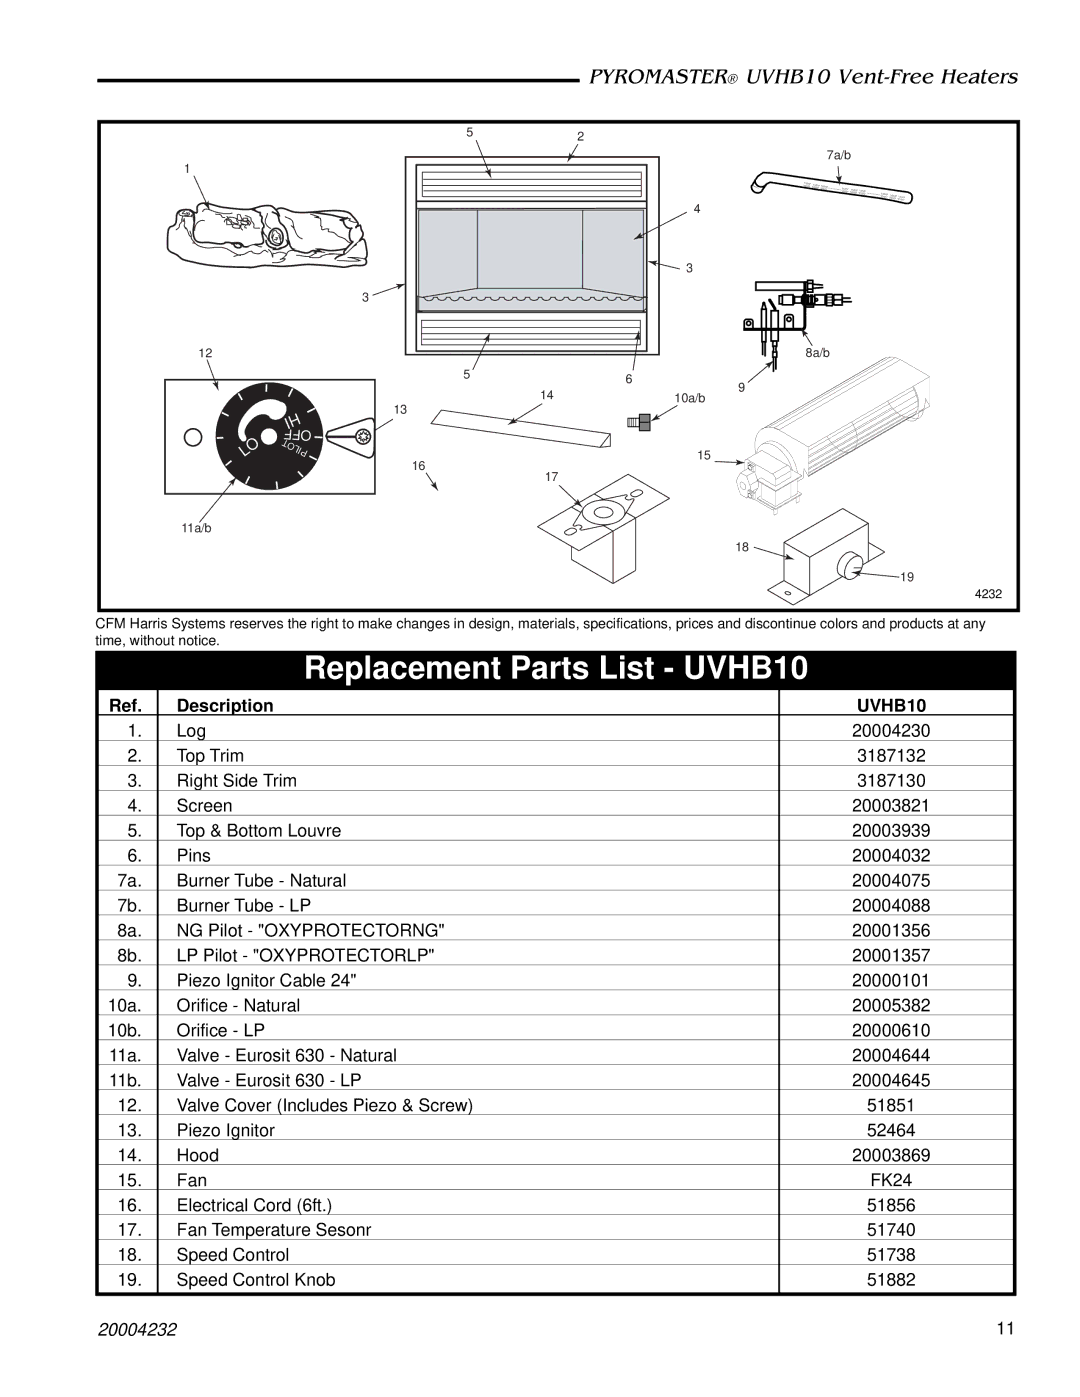 CFM warranty Replacement Parts List UVHB10 